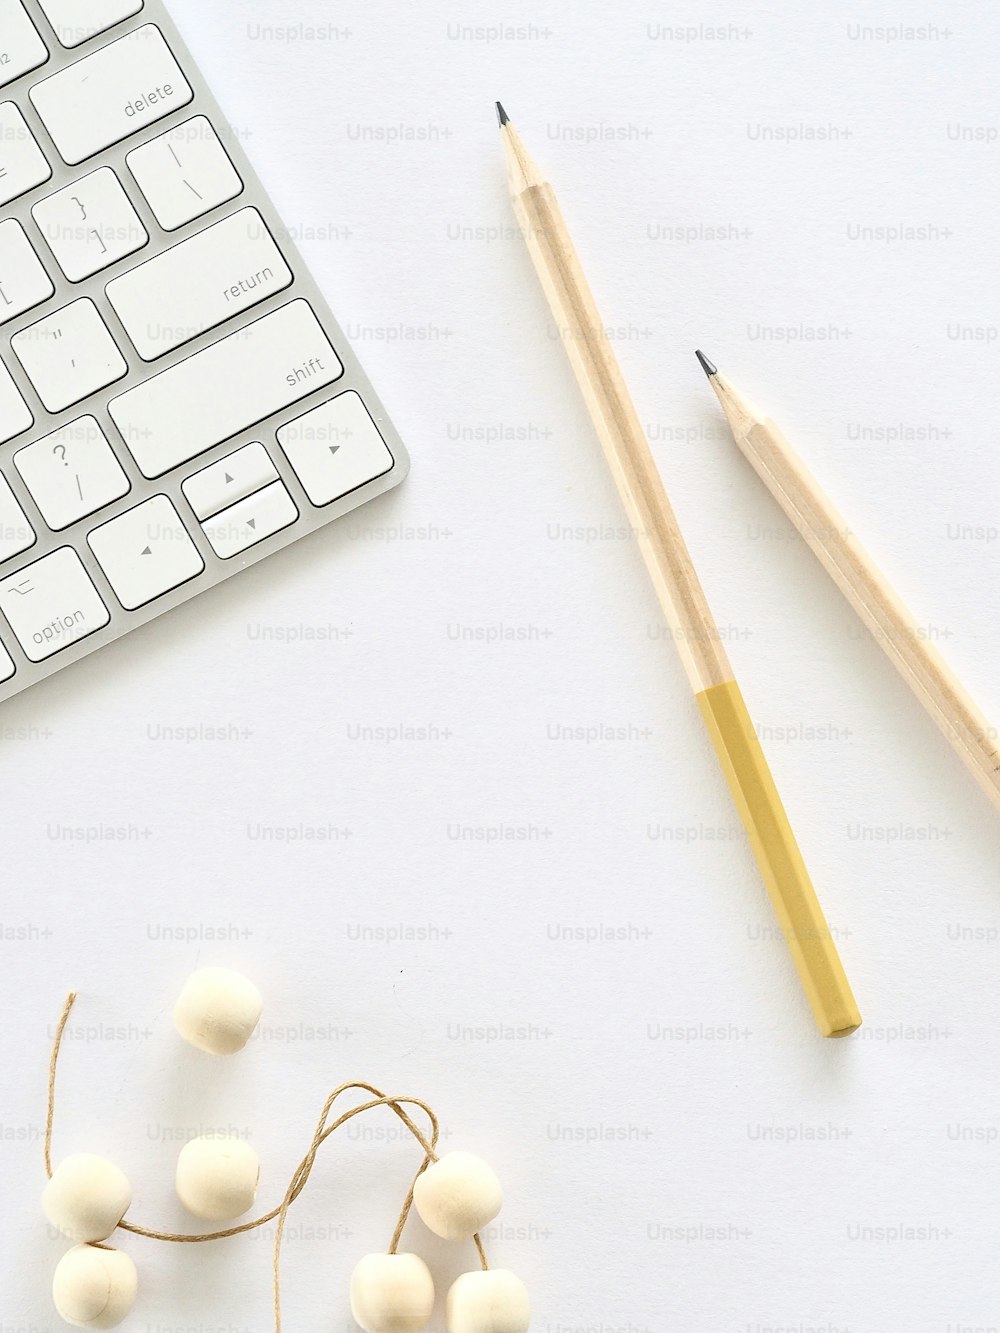 キーボード、鉛筆、机の上の綿球